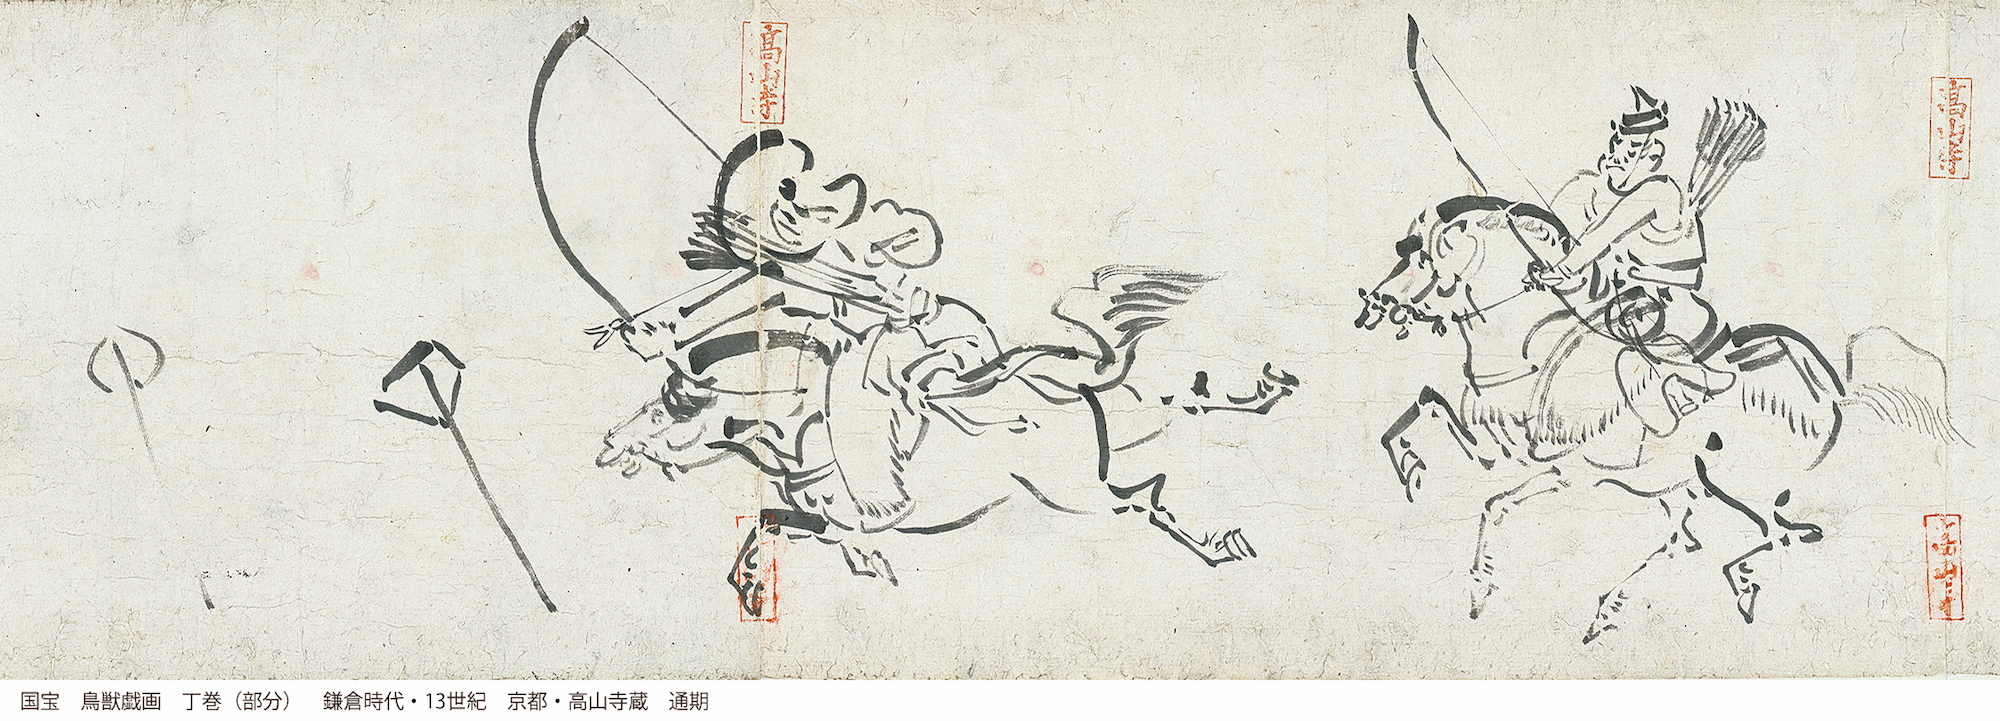 国宝　鳥獣戯画　丁巻（部分）　鎌倉時代　13世紀　京都・高山寺　通期